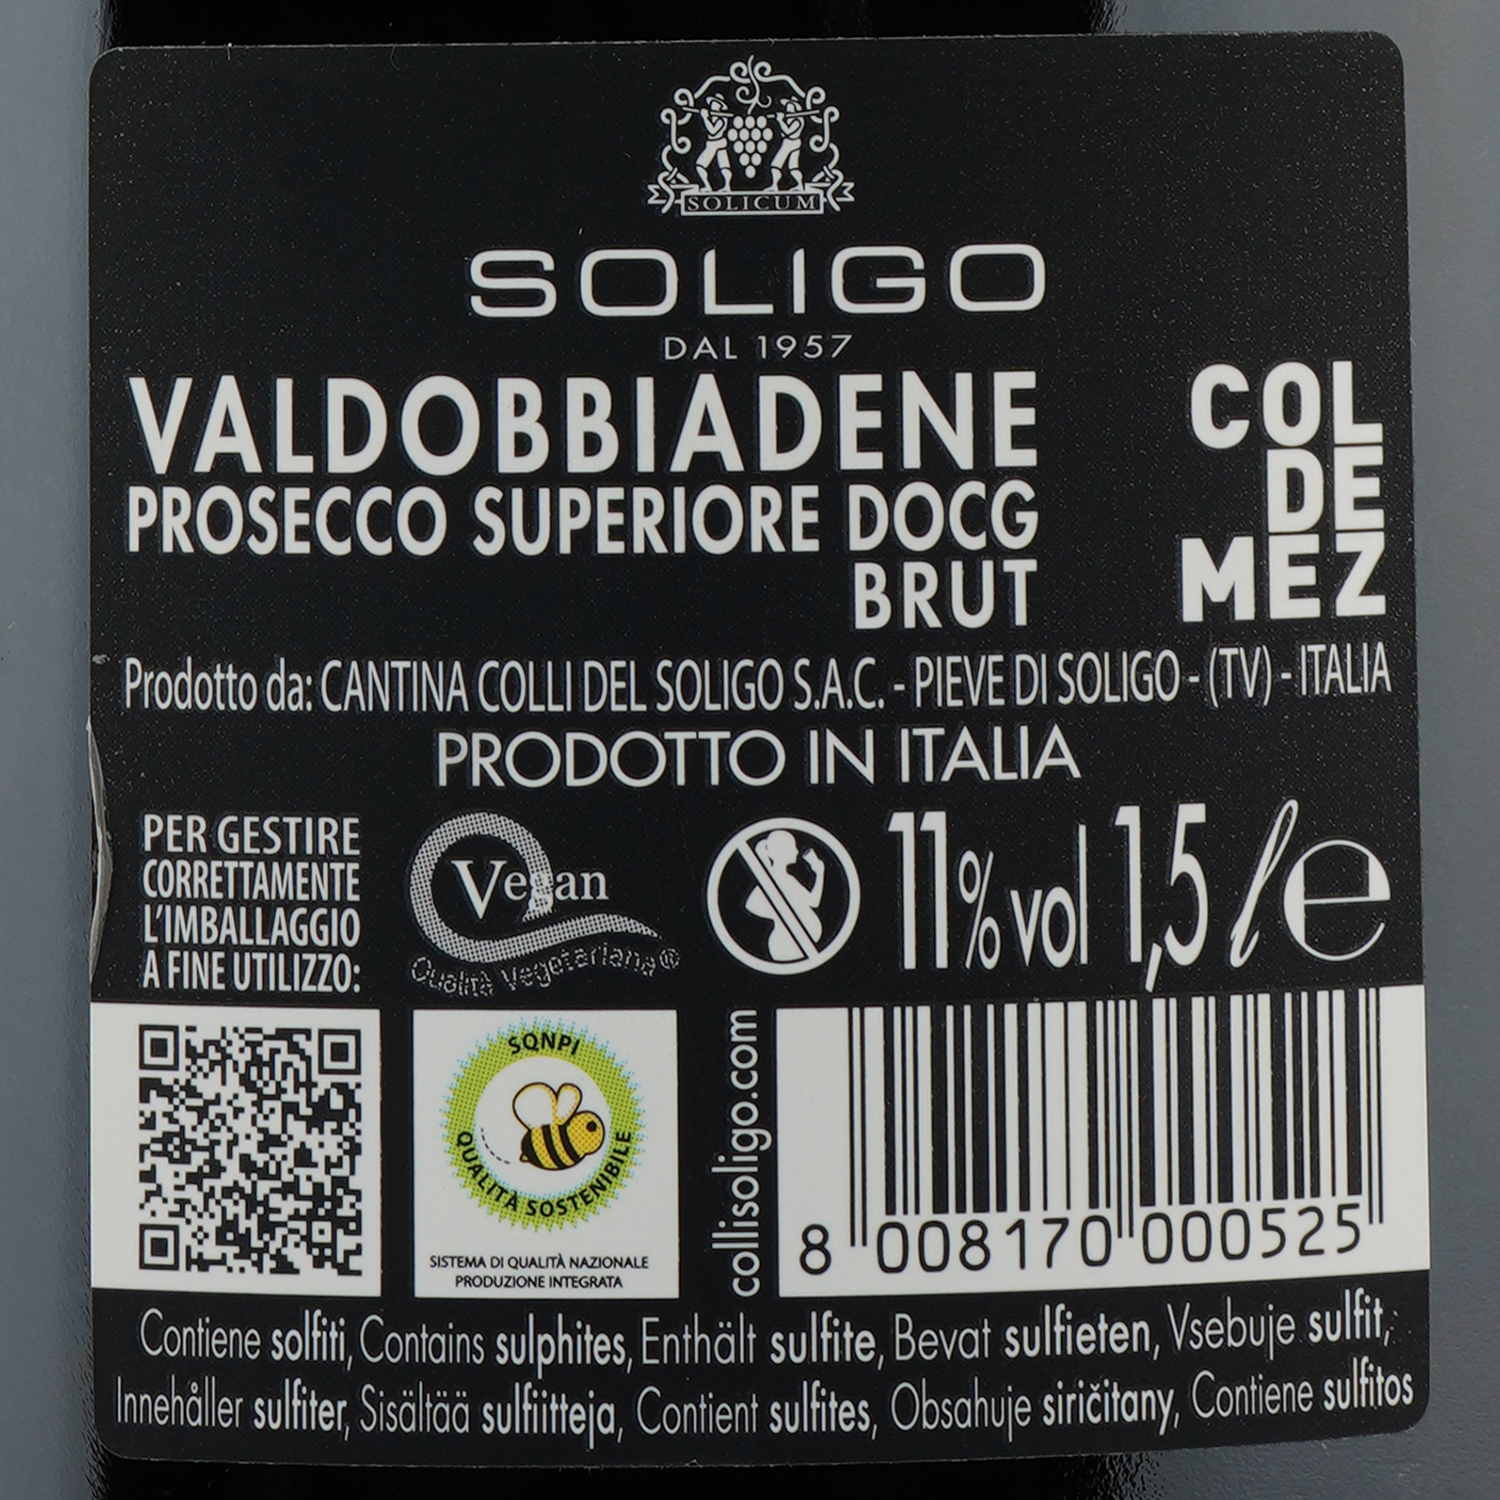 Ігристе вино Soligo Col de Mez Prosecco Valdobbiadene Brut, біле, брют, 11%, 1,5 л (53803) - фото 4